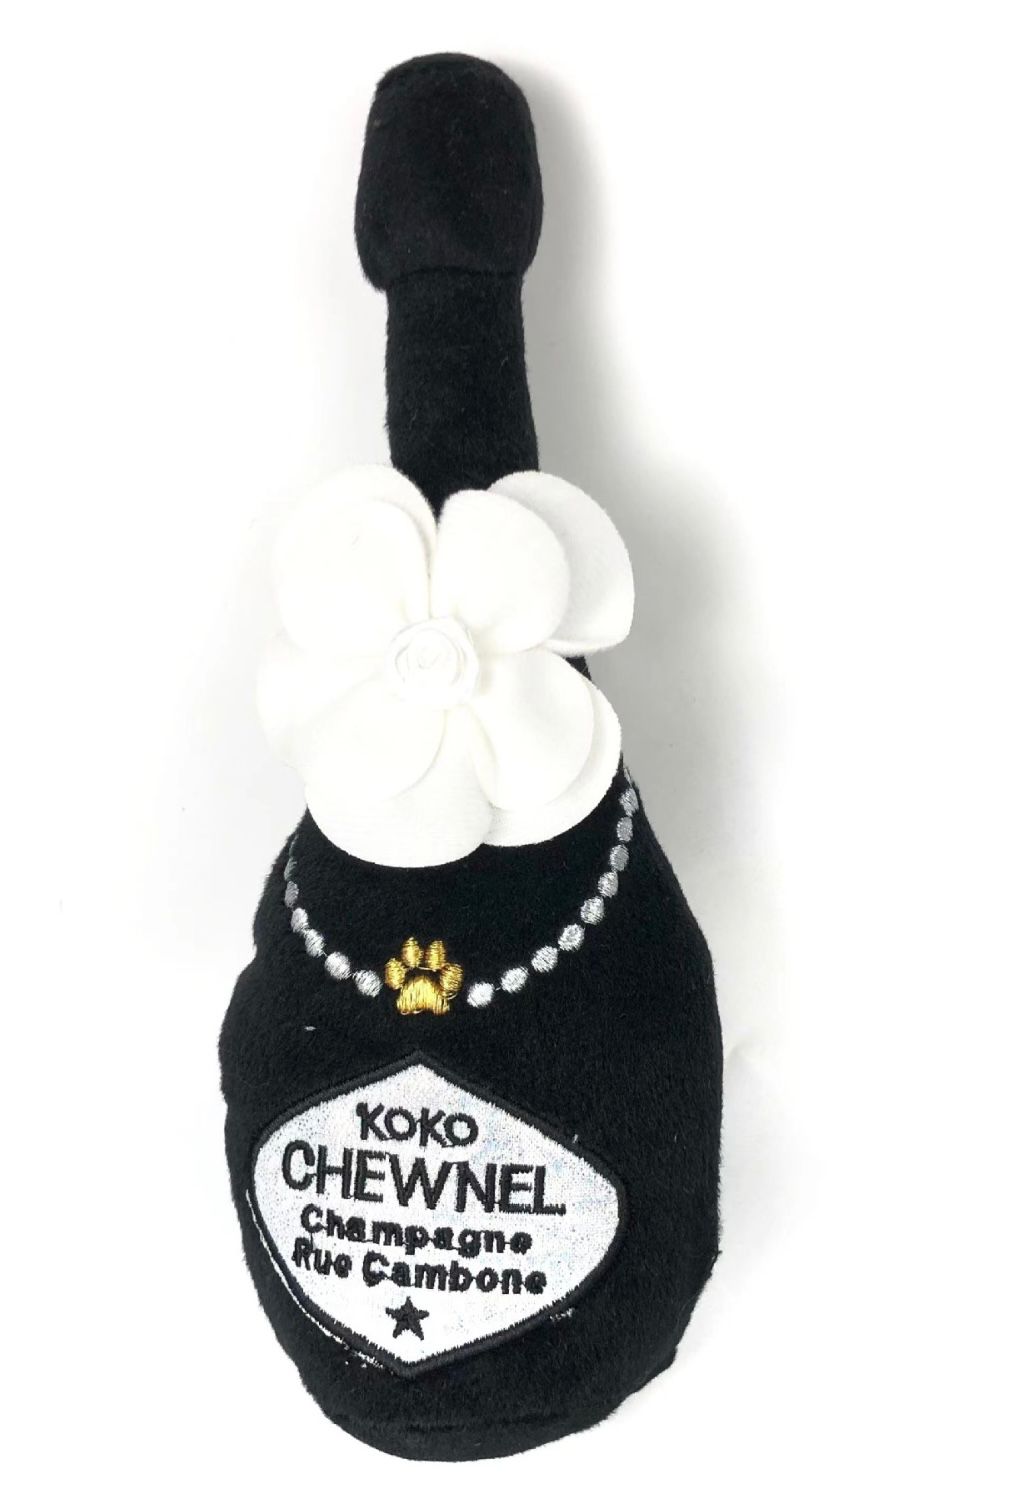 Koko Chewnel Perfume Dog Toy  Designer Dog Boutique